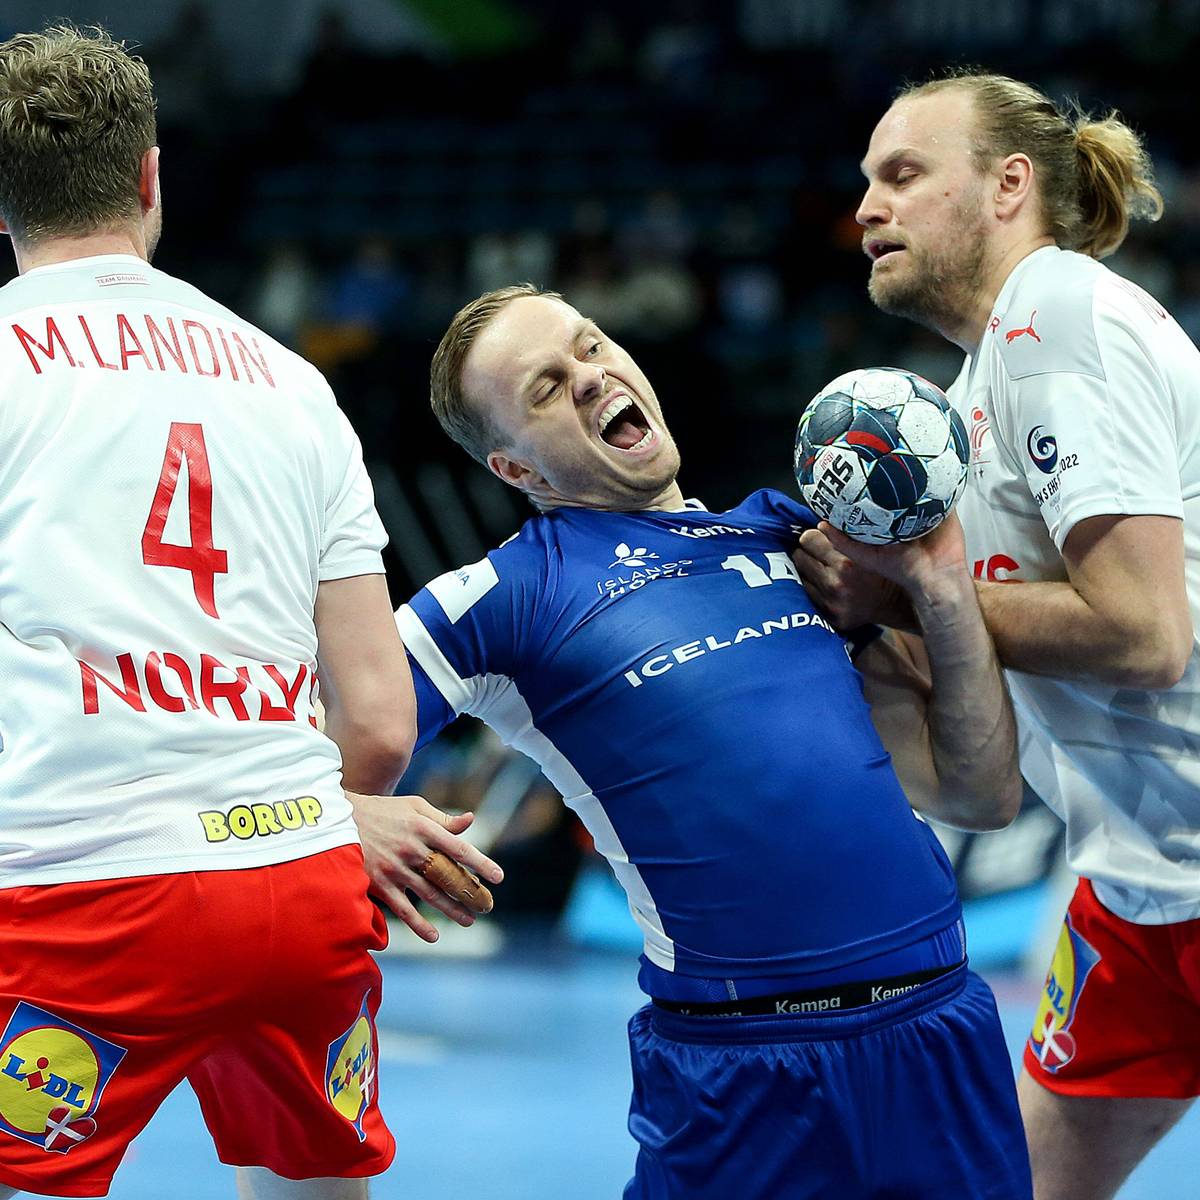 Auf dramatische Art und Weise verpasst Island das Halbfinale bei der Handball-EM. Die Isländer werfen Dänemark nun Wettbewerbsverzerrung vor, sogar von Wettbetrug ist die Rede.